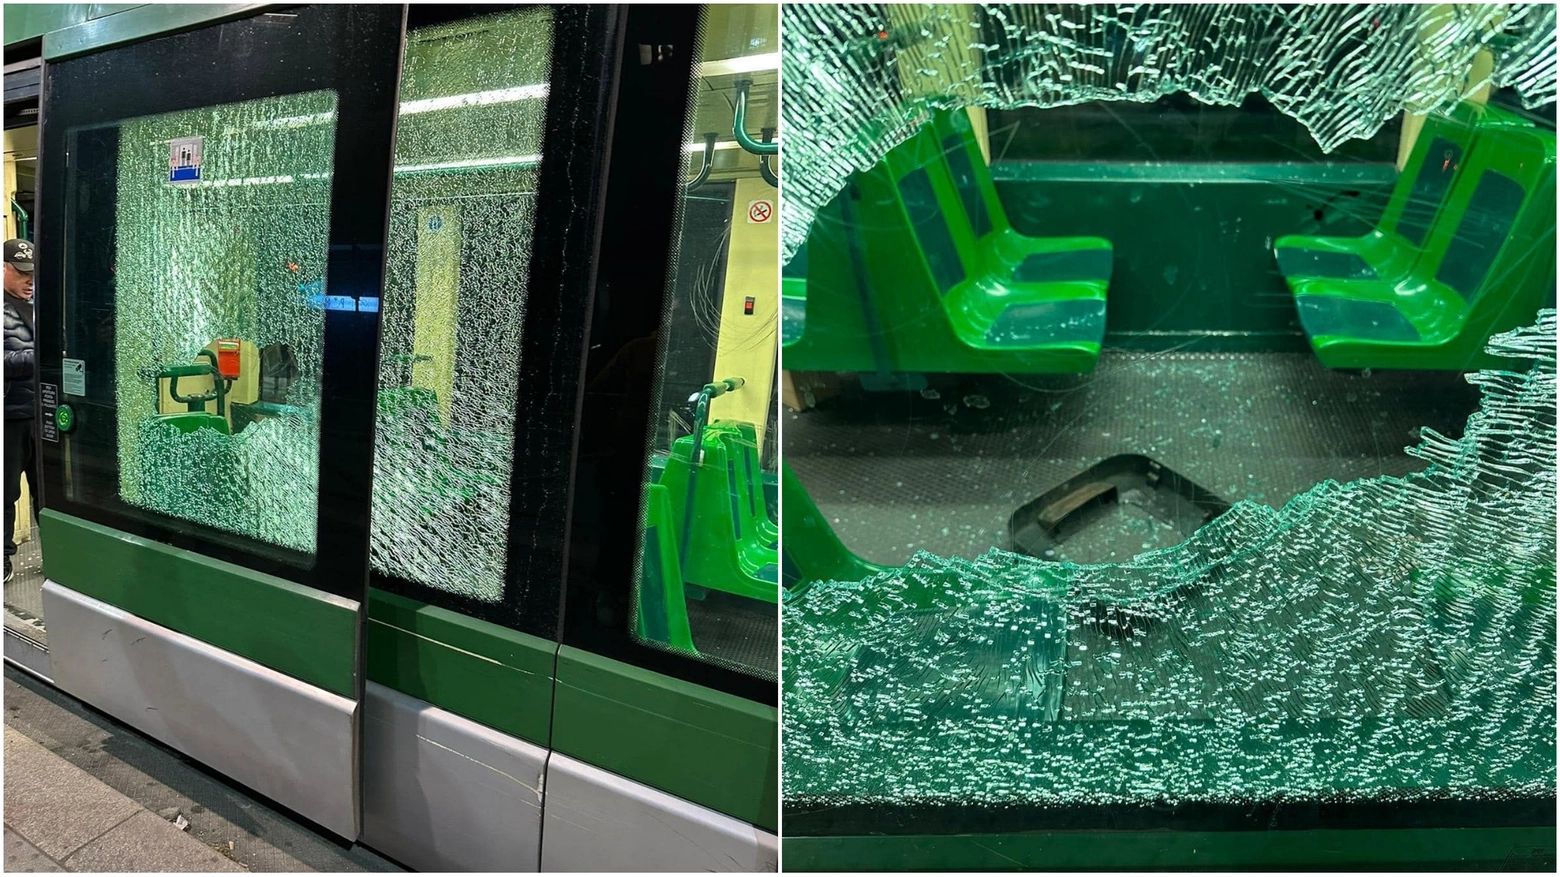 Il tram danneggiato alla fermata tra viale Tibaldi e via Pezzotti (foto da Facebook: Lorenzo Duca)